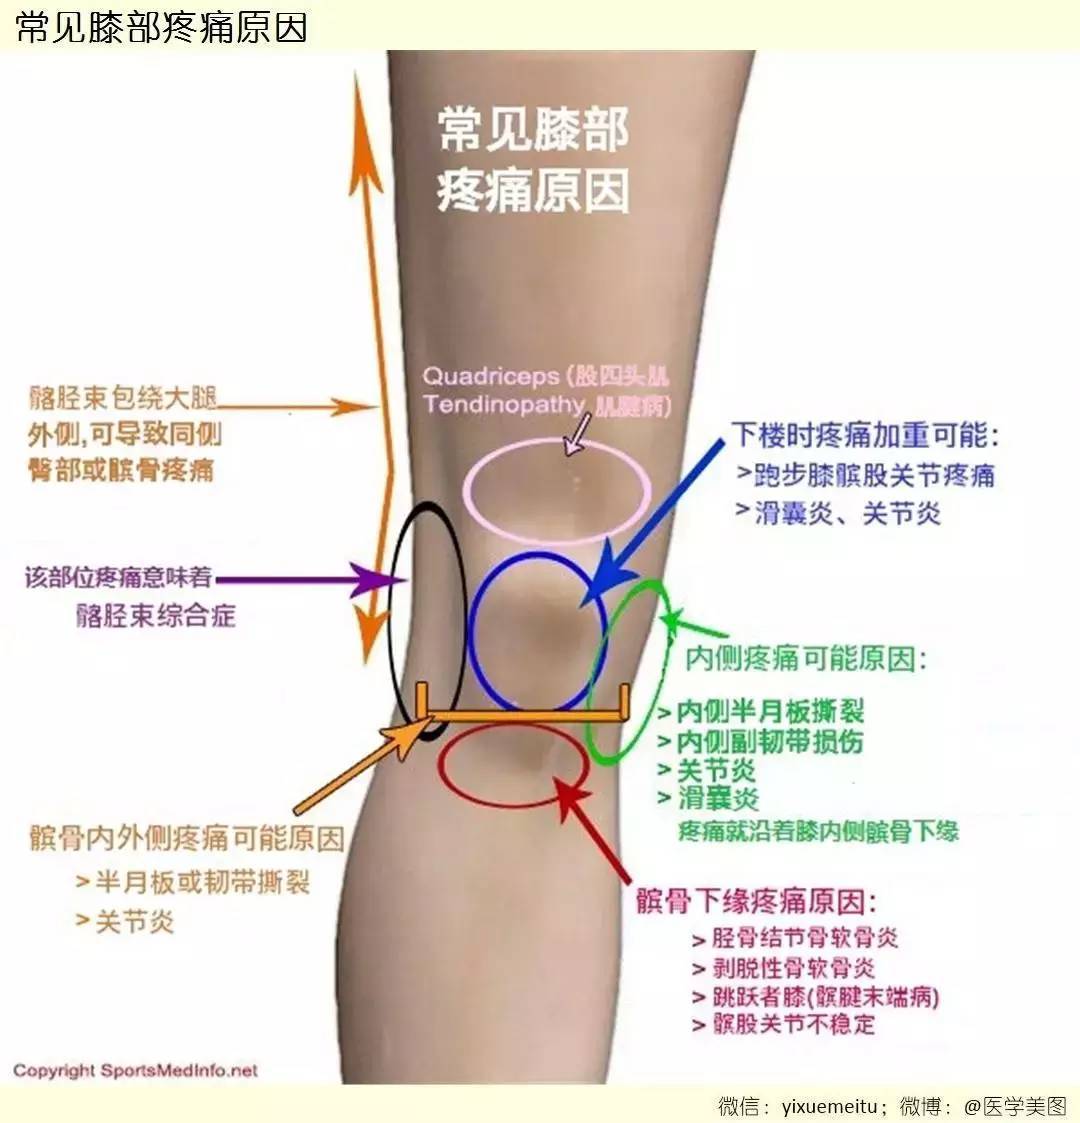 一图读懂:常见膝盖疼痛的原因